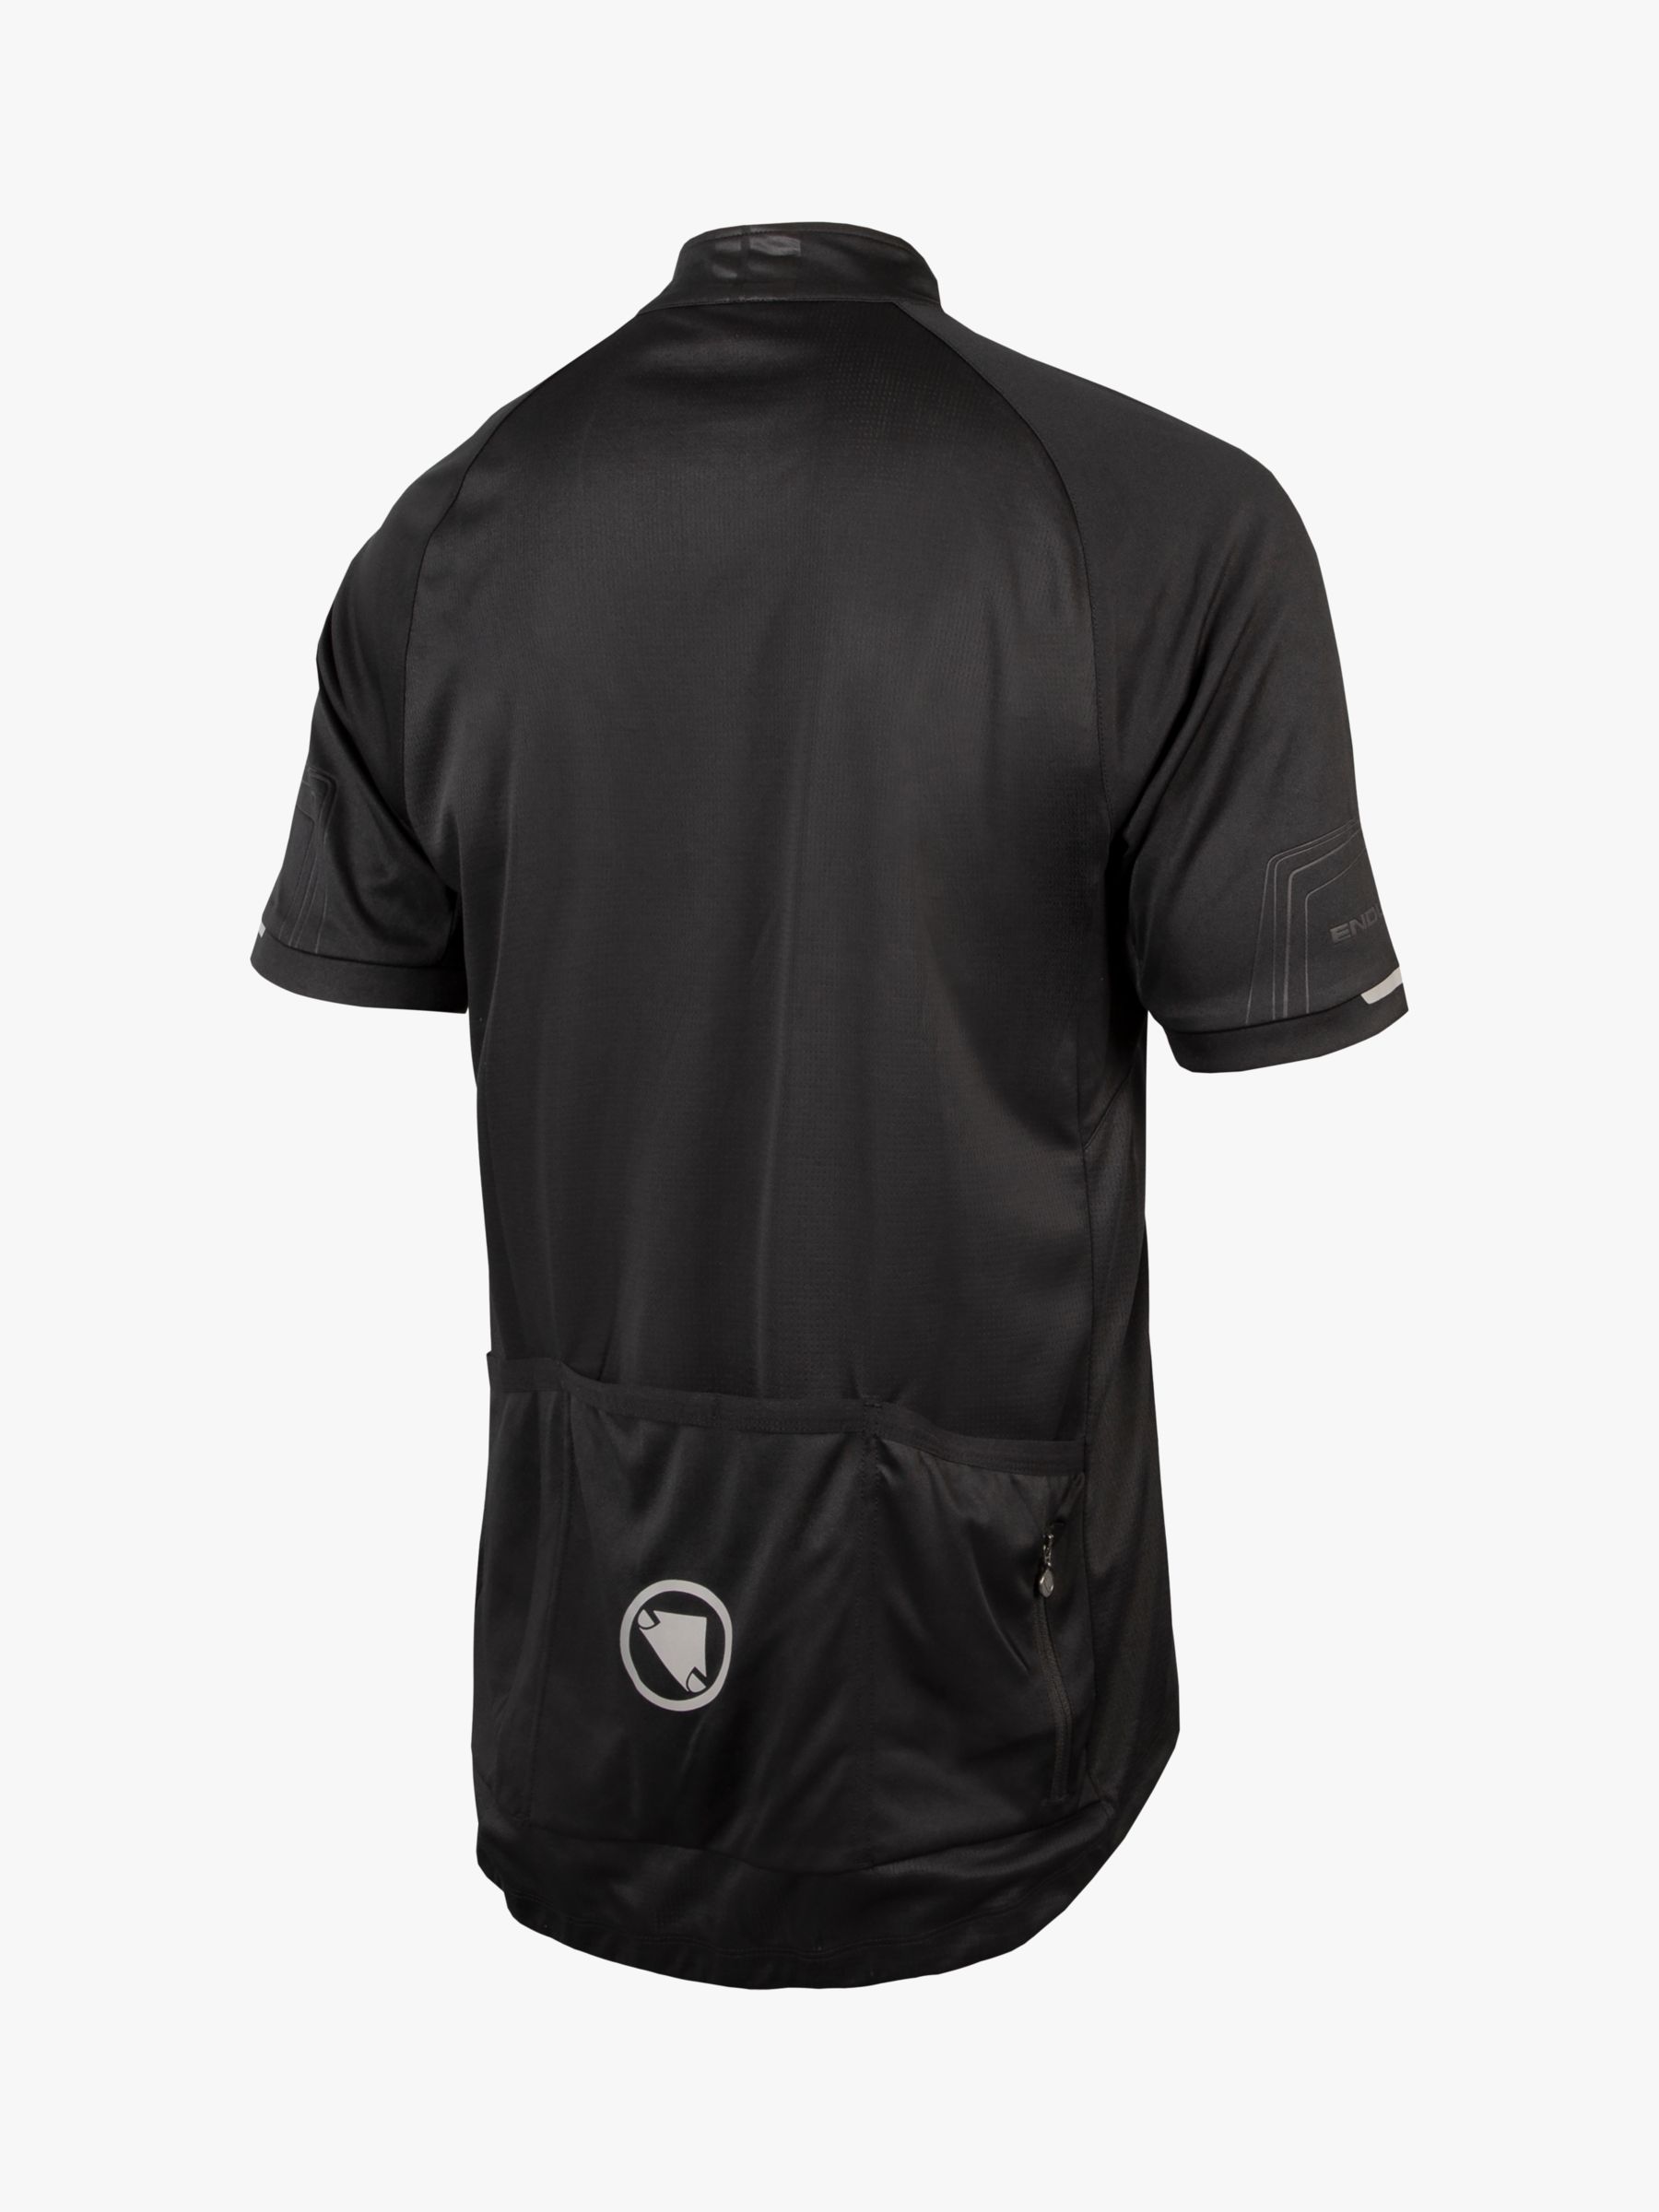 Endura Men's Xtract Short Sleeve Jersey II, Black, S